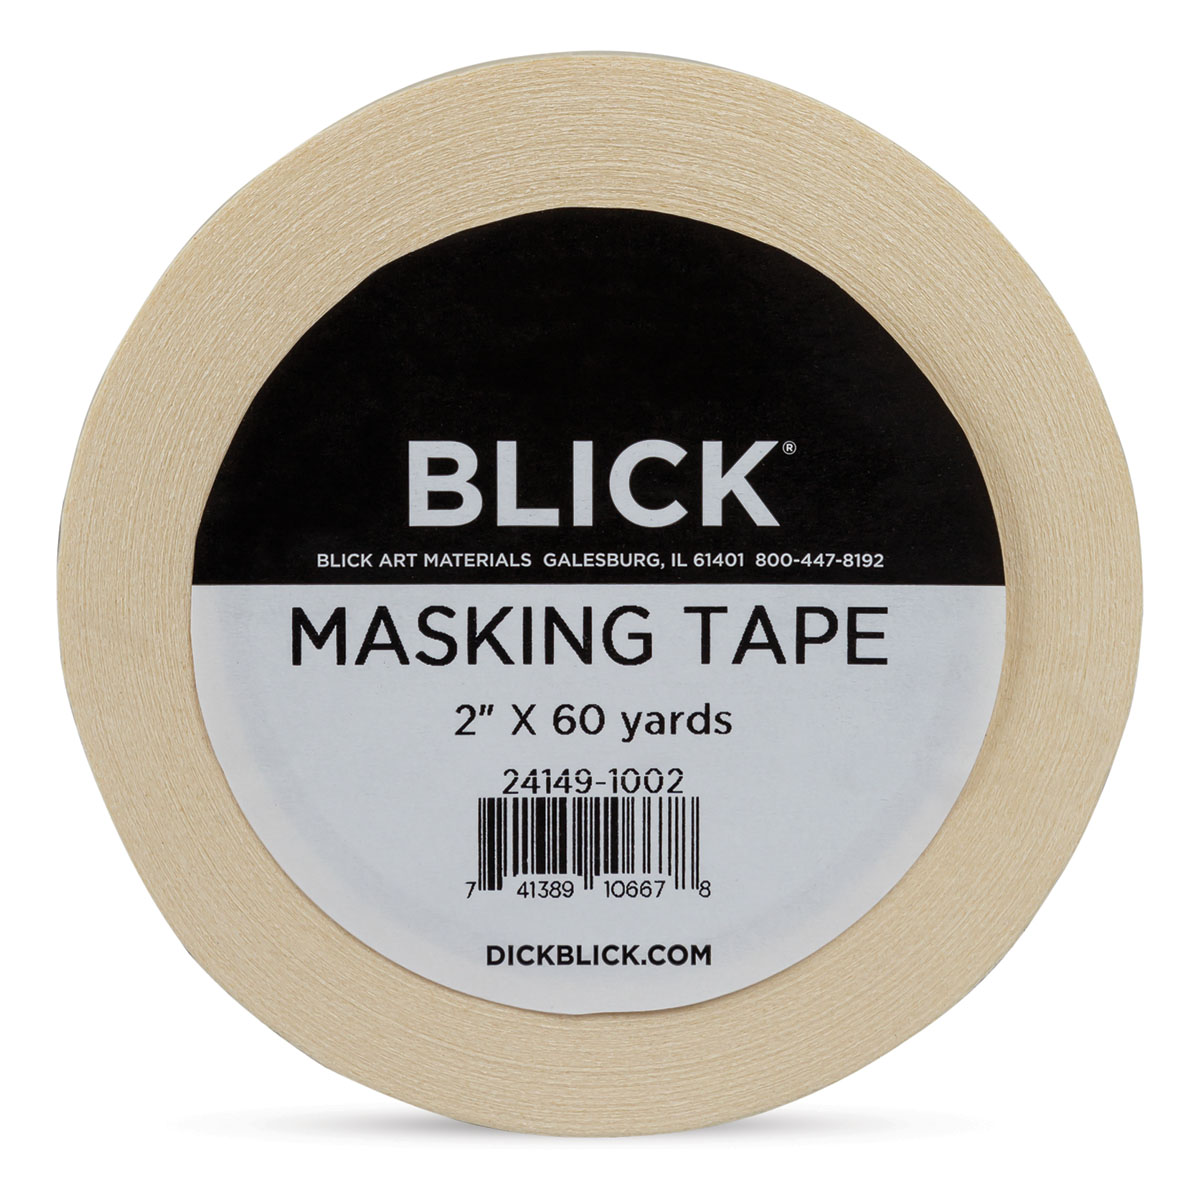 Blick Masking Tape  BLICK Art Materials